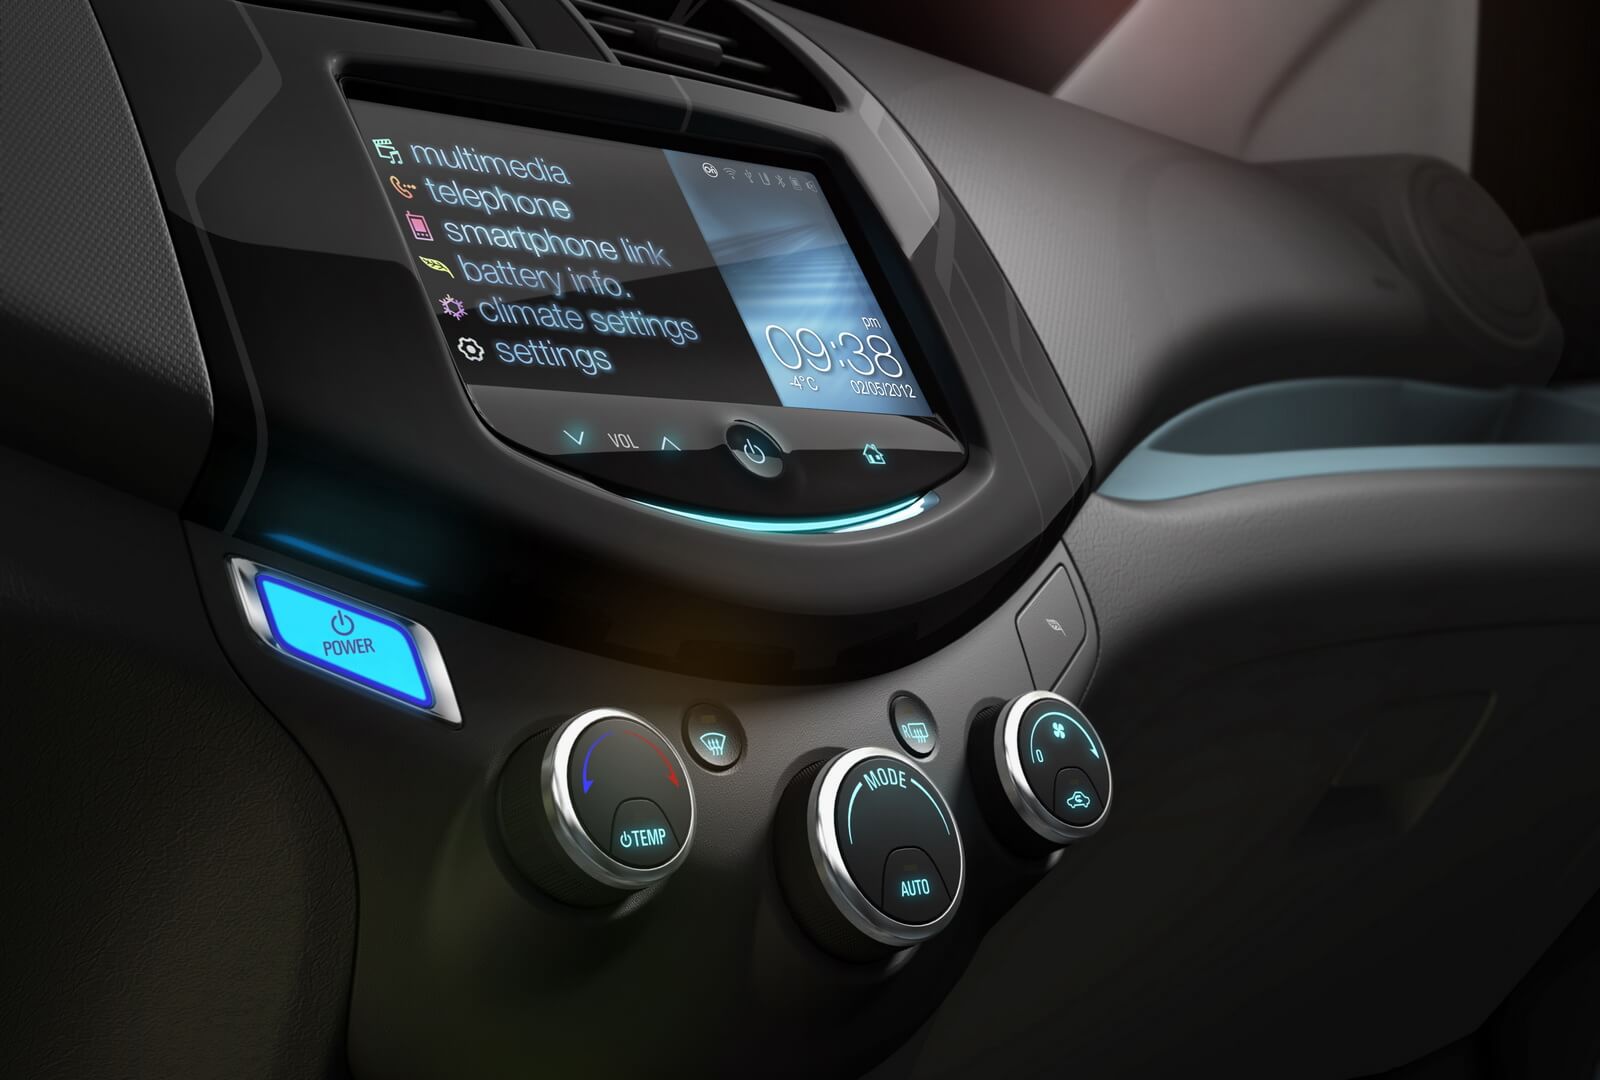 Сенсорной дисплей на центральной консоли электромобиля Chevrolet Spark